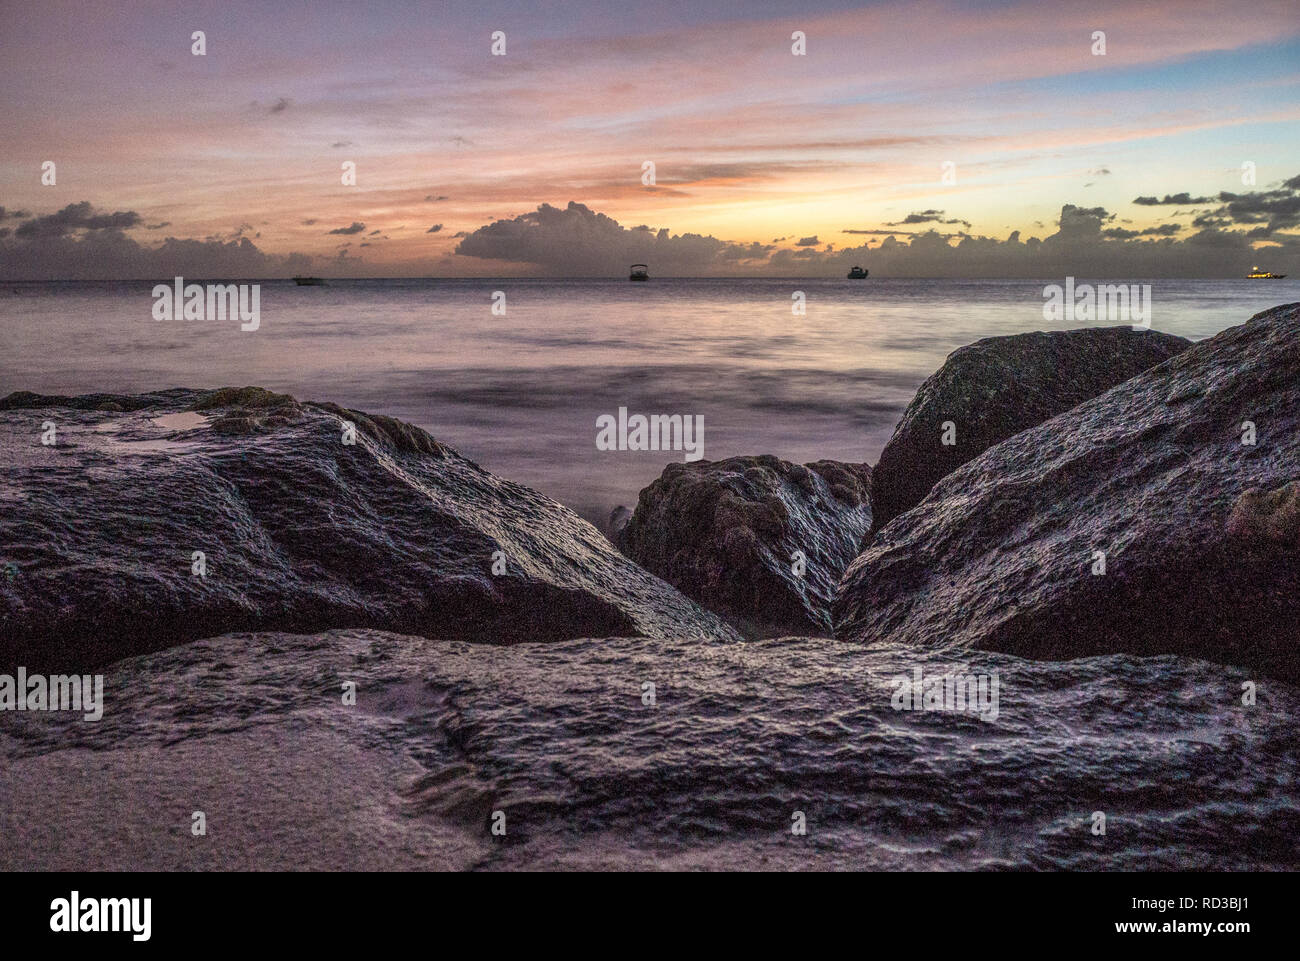 Rocks on Antiguan beach at sunset Stock Photo